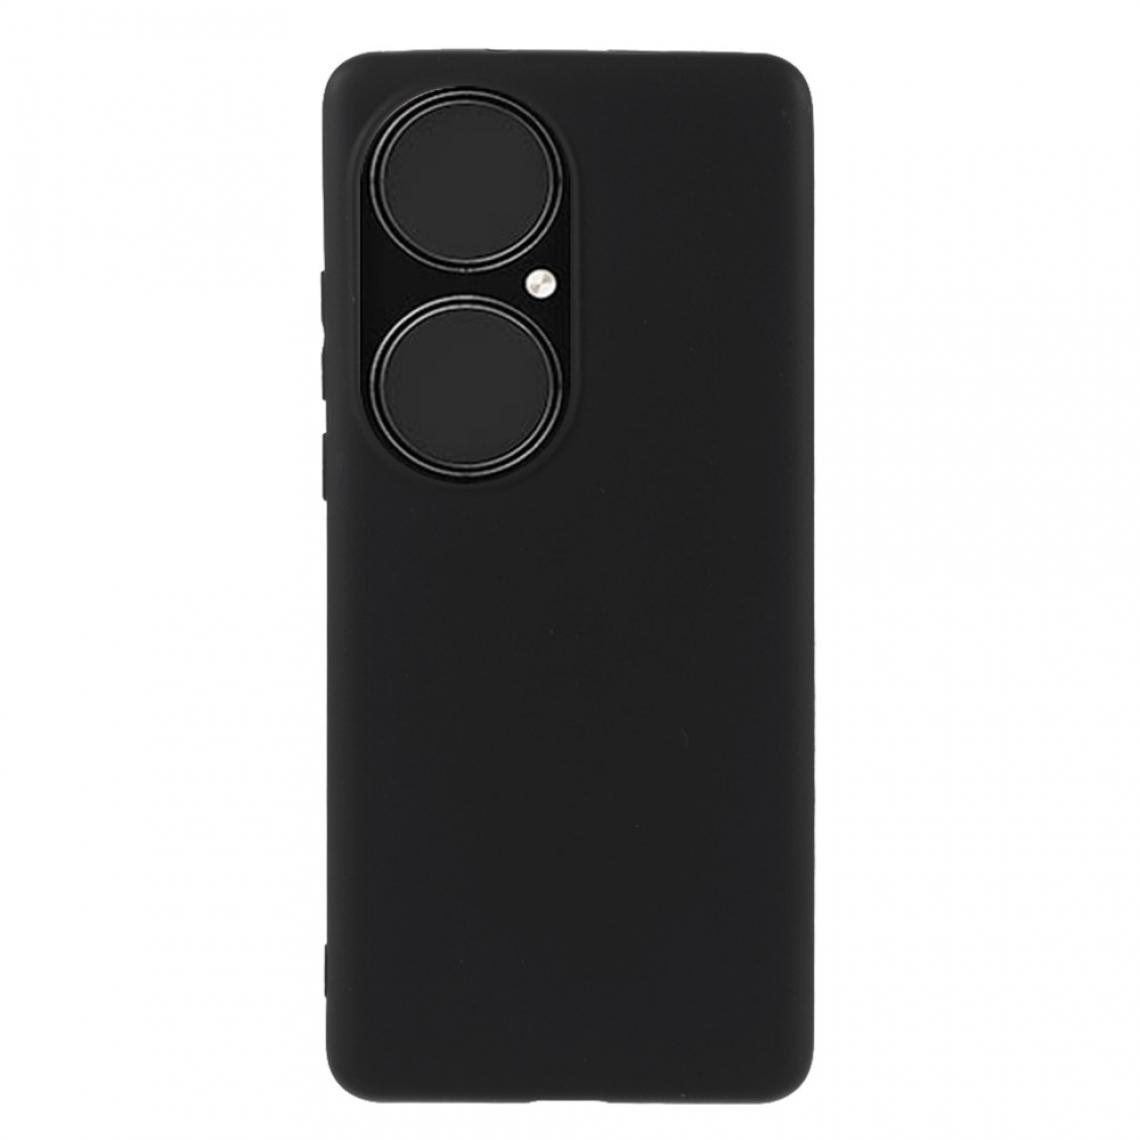 Other - Coque en TPU Antichoc mat double face noir pour votre Huawei P50 Pro - Coque, étui smartphone